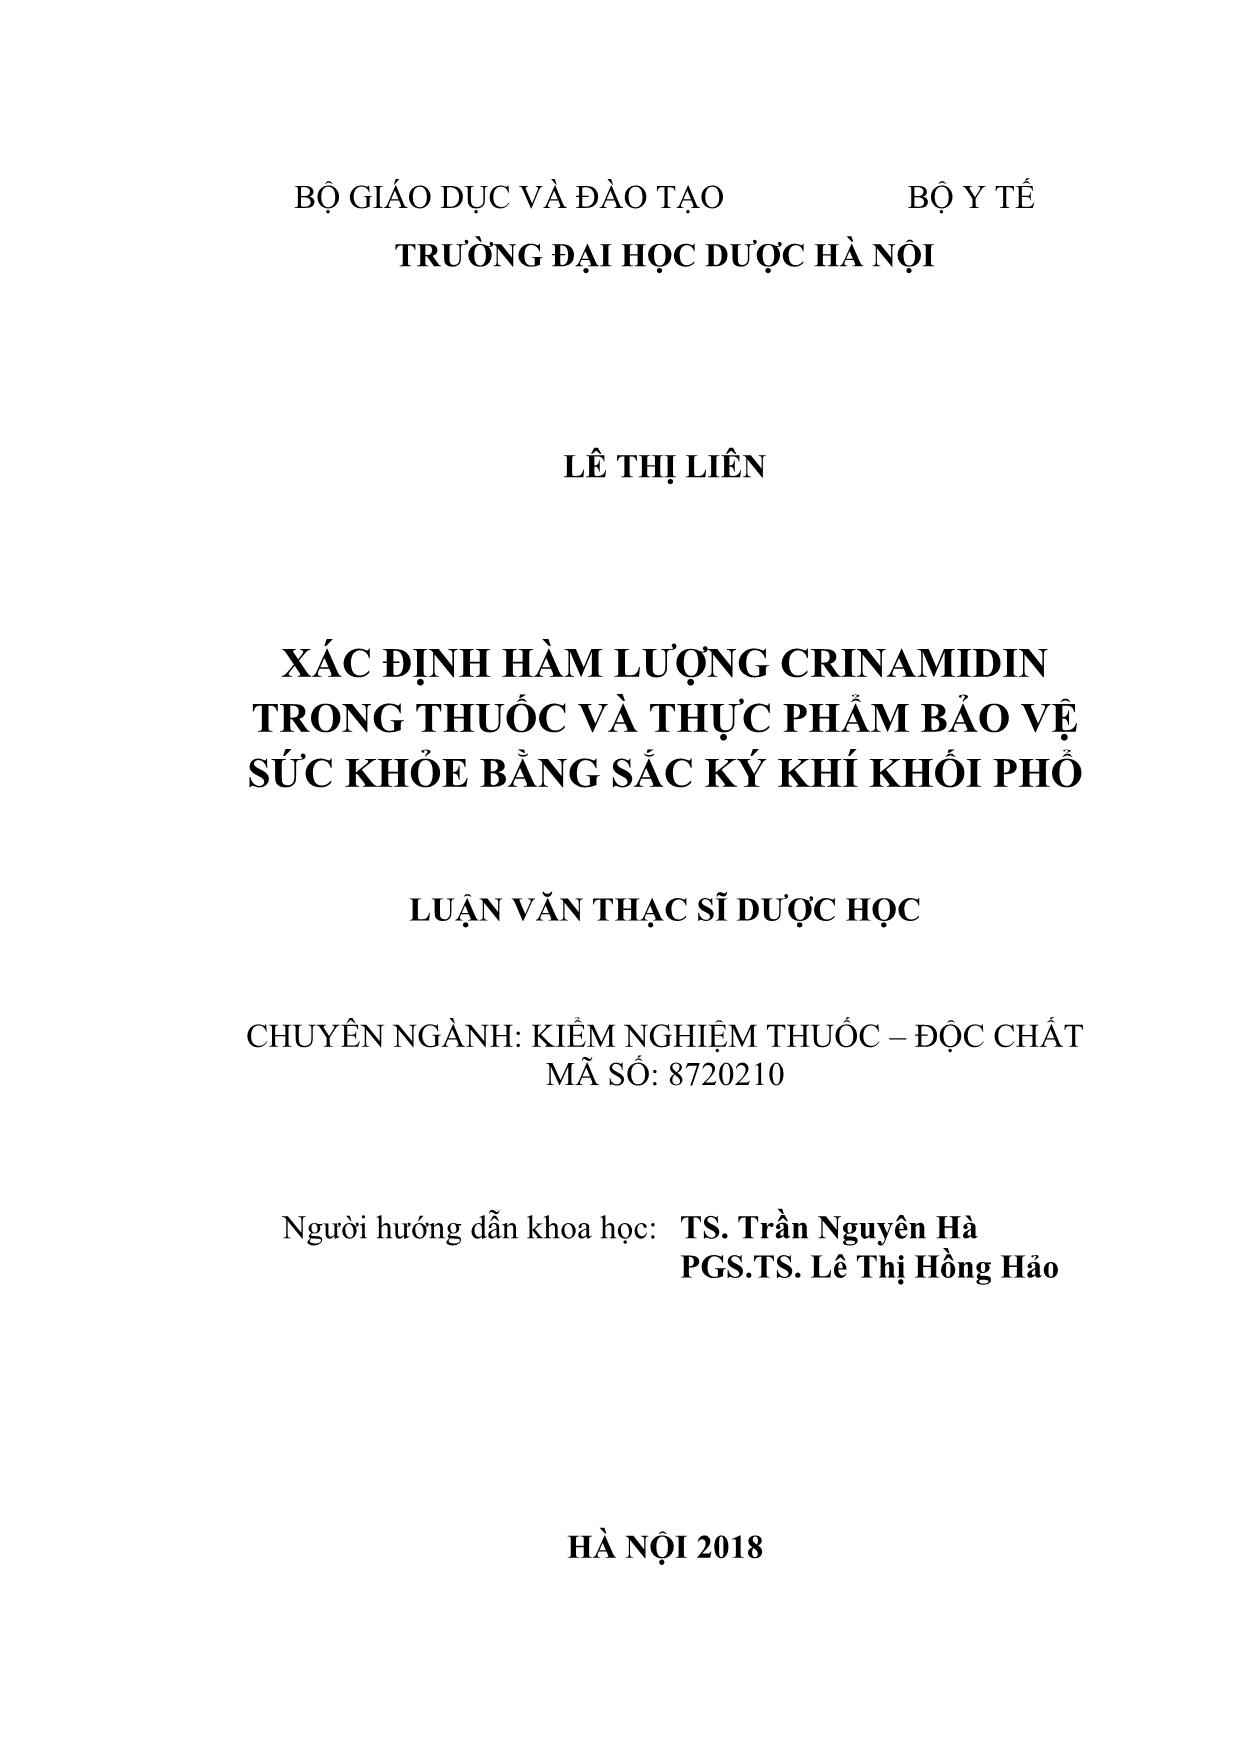 Luận văn Xác định hàm lượng crinamidin trong thuốc và thực phẩm bảo vệ sức khỏe bằng sắc ký khí khối phổ trang 2